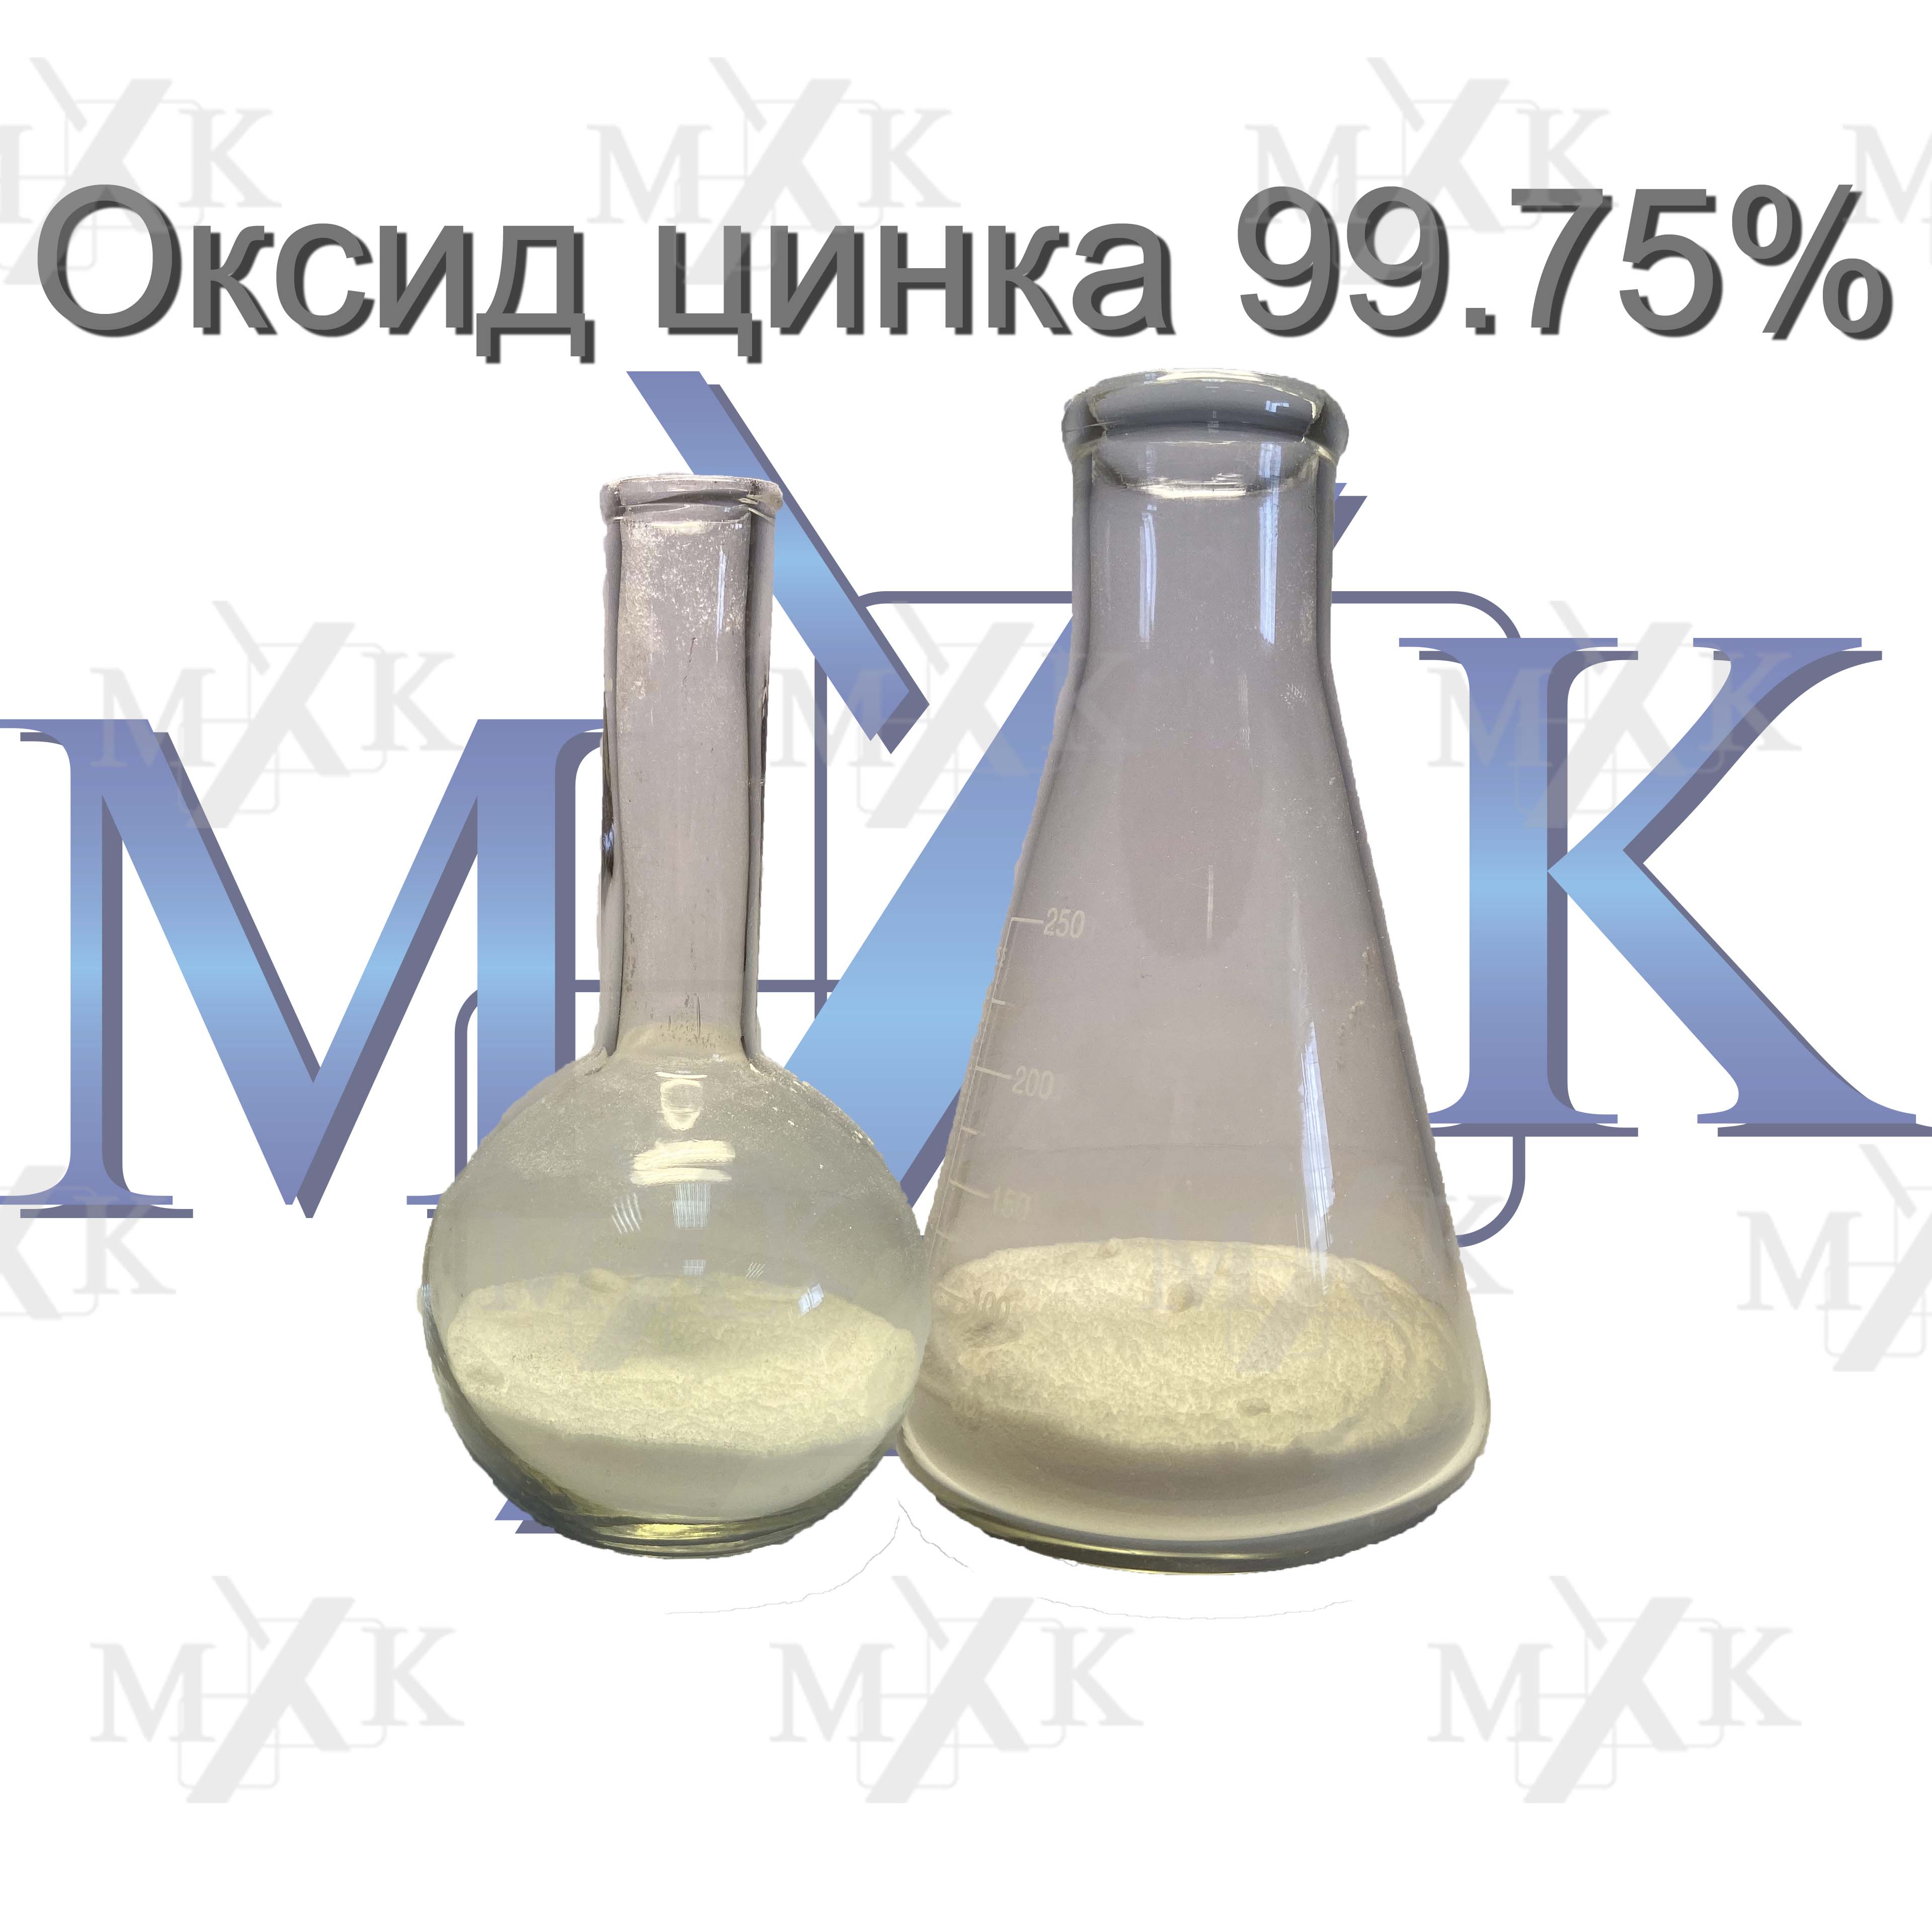 Оксид цинка проявляет. Цинк оксид 0,05. Цинковые белила это оксид цинка. Оксид оксид цинка. Оксид цинка аптека.